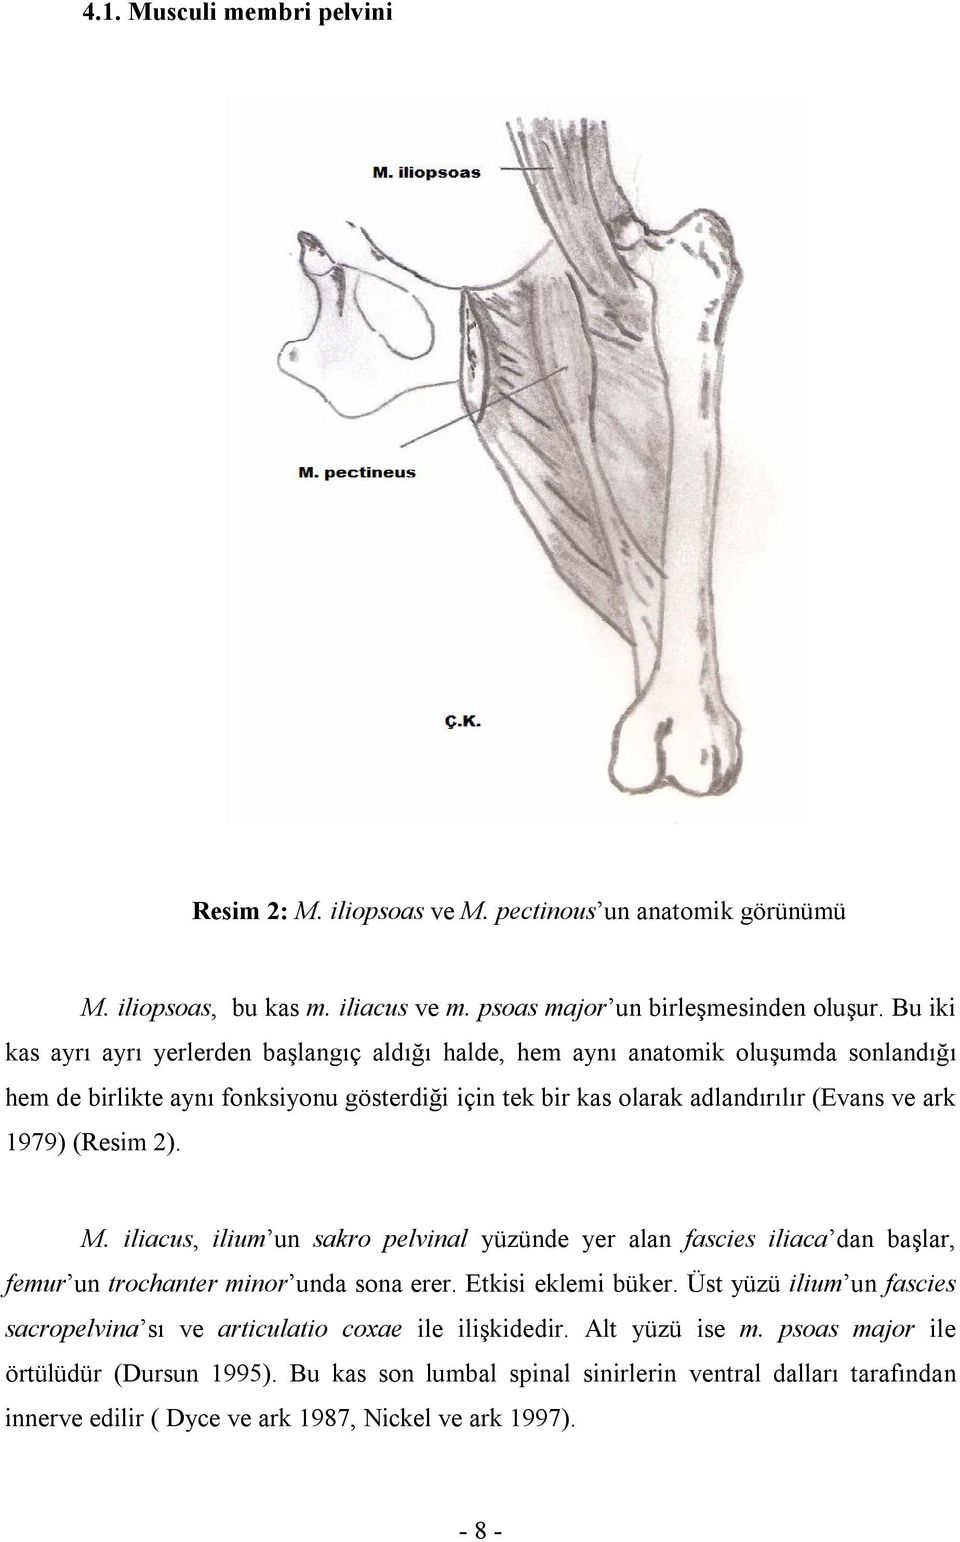 (Resim 2). M. iliacus, ilium un sakro pelvinal yüzünde yer alan fascies iliaca dan başlar, femur un trochanter minor unda sona erer. Etkisi eklemi büker.